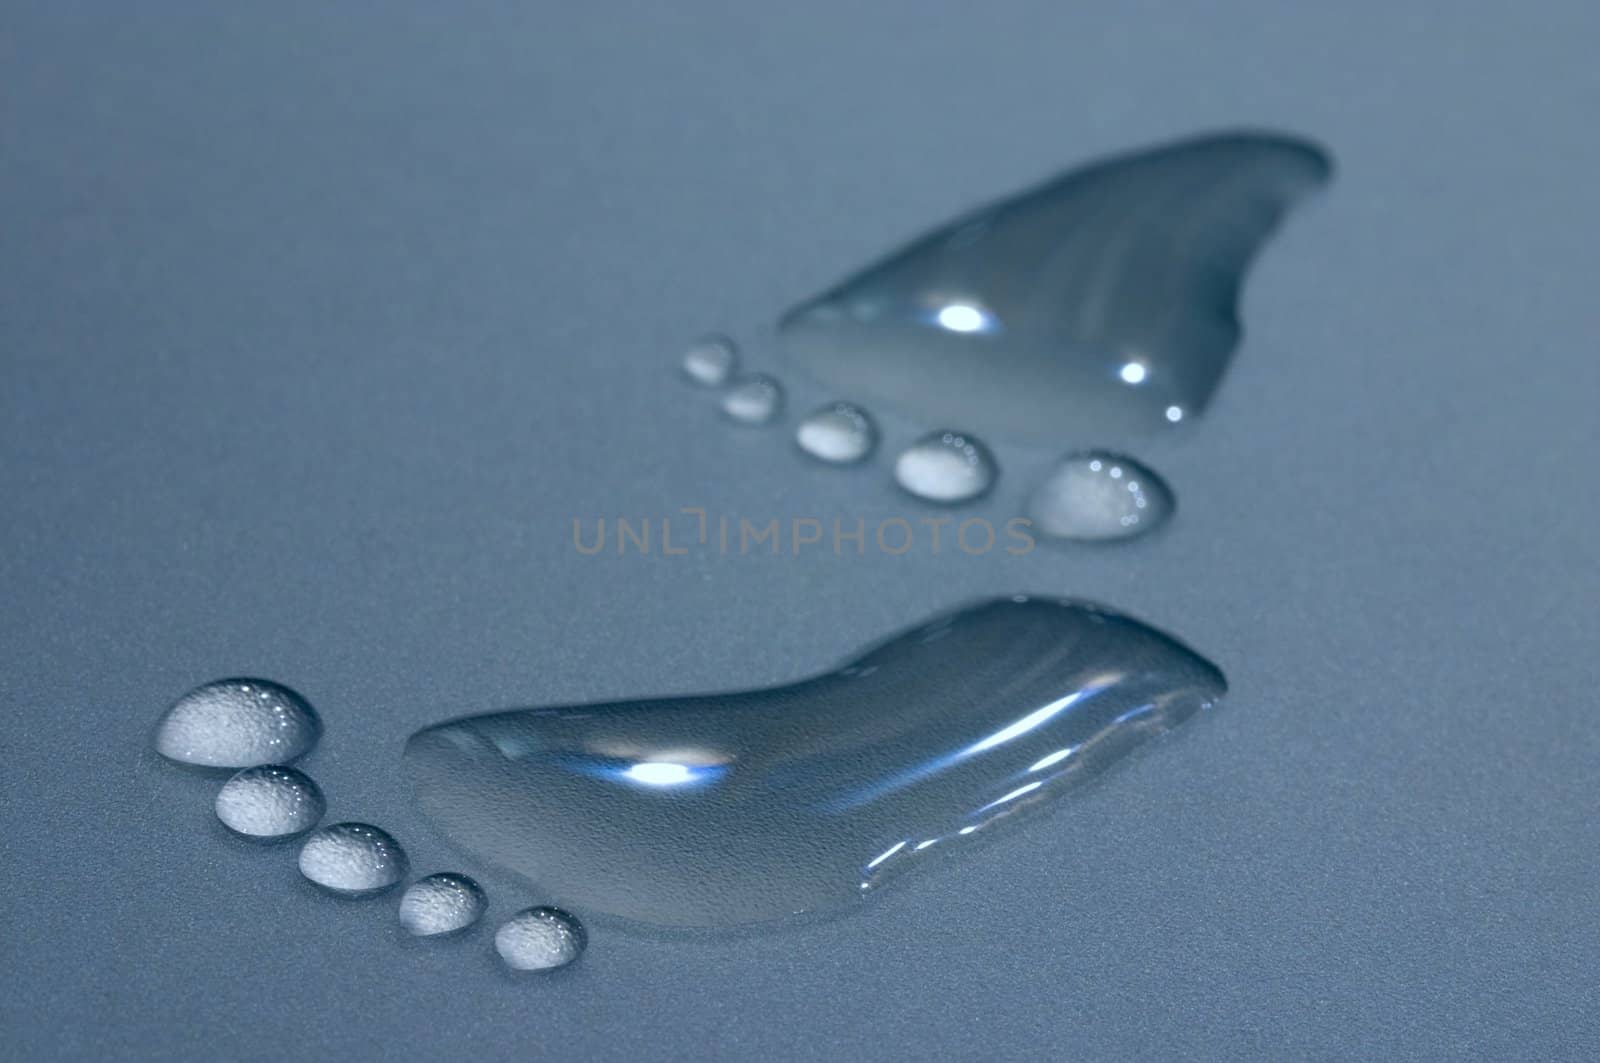 Drops of water that look like footprint